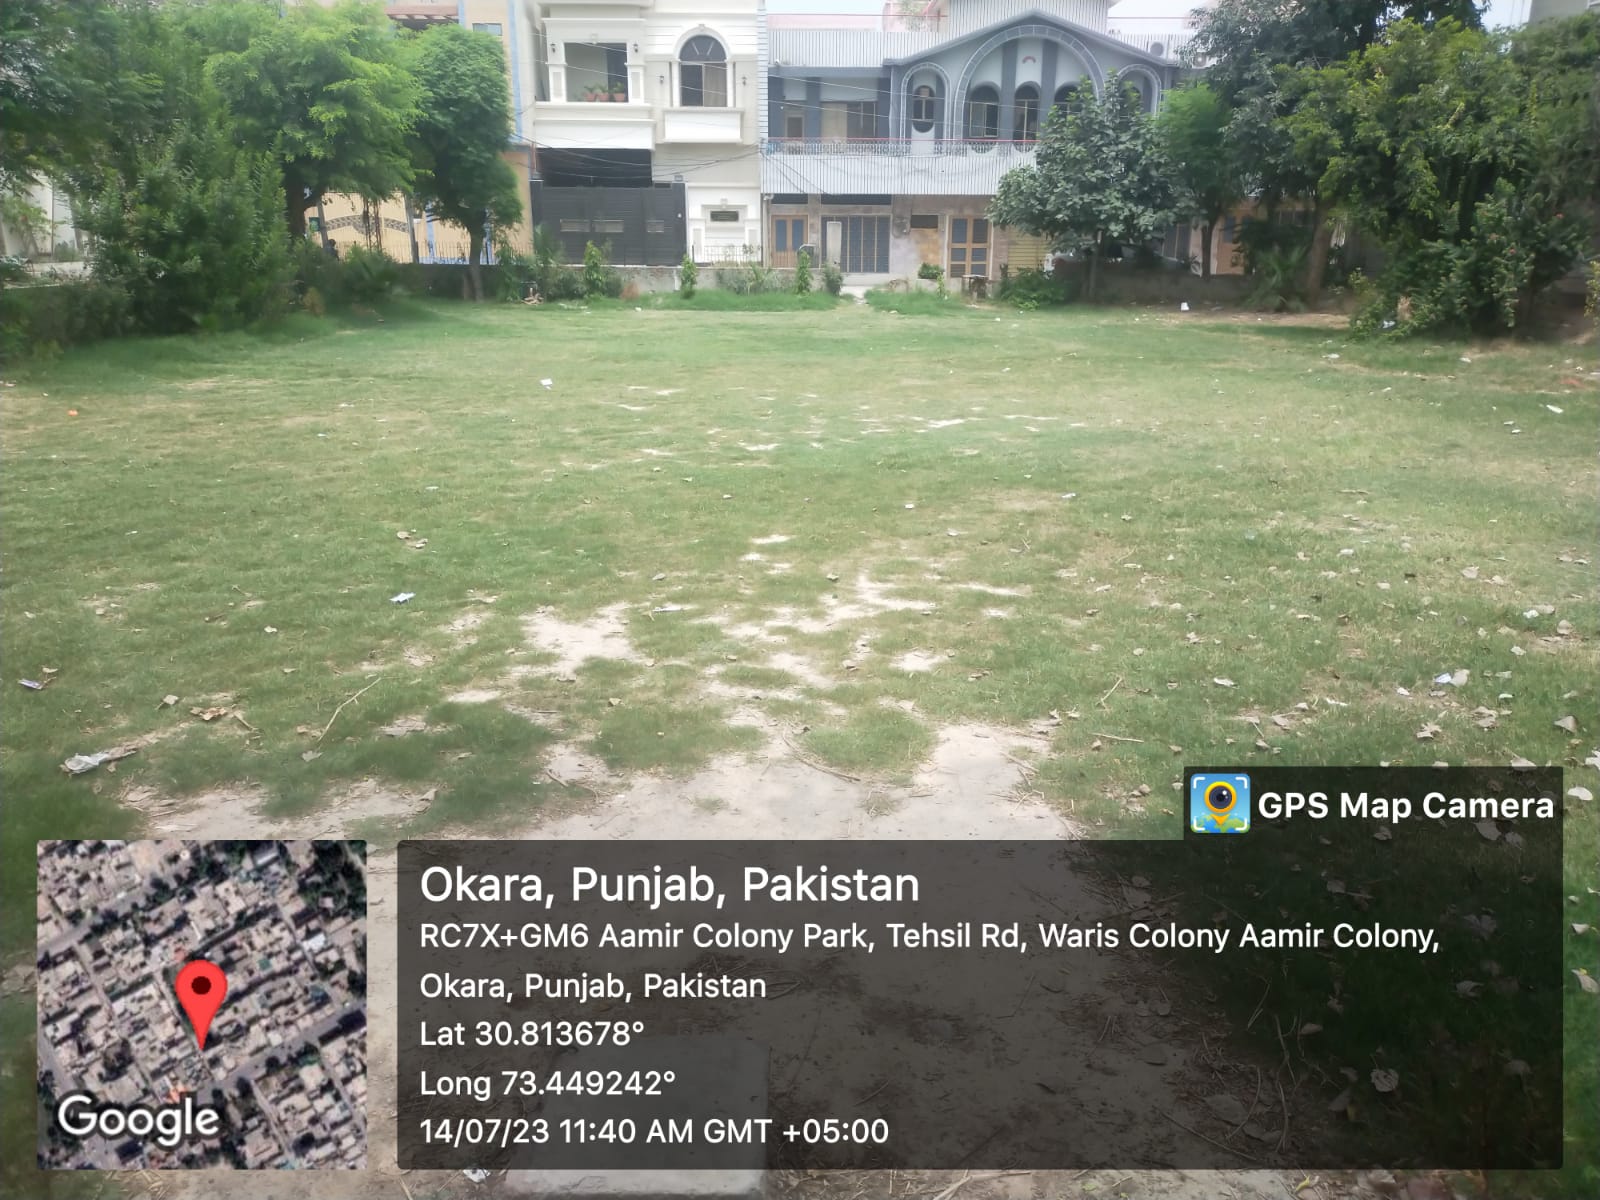 Aamir colony park2